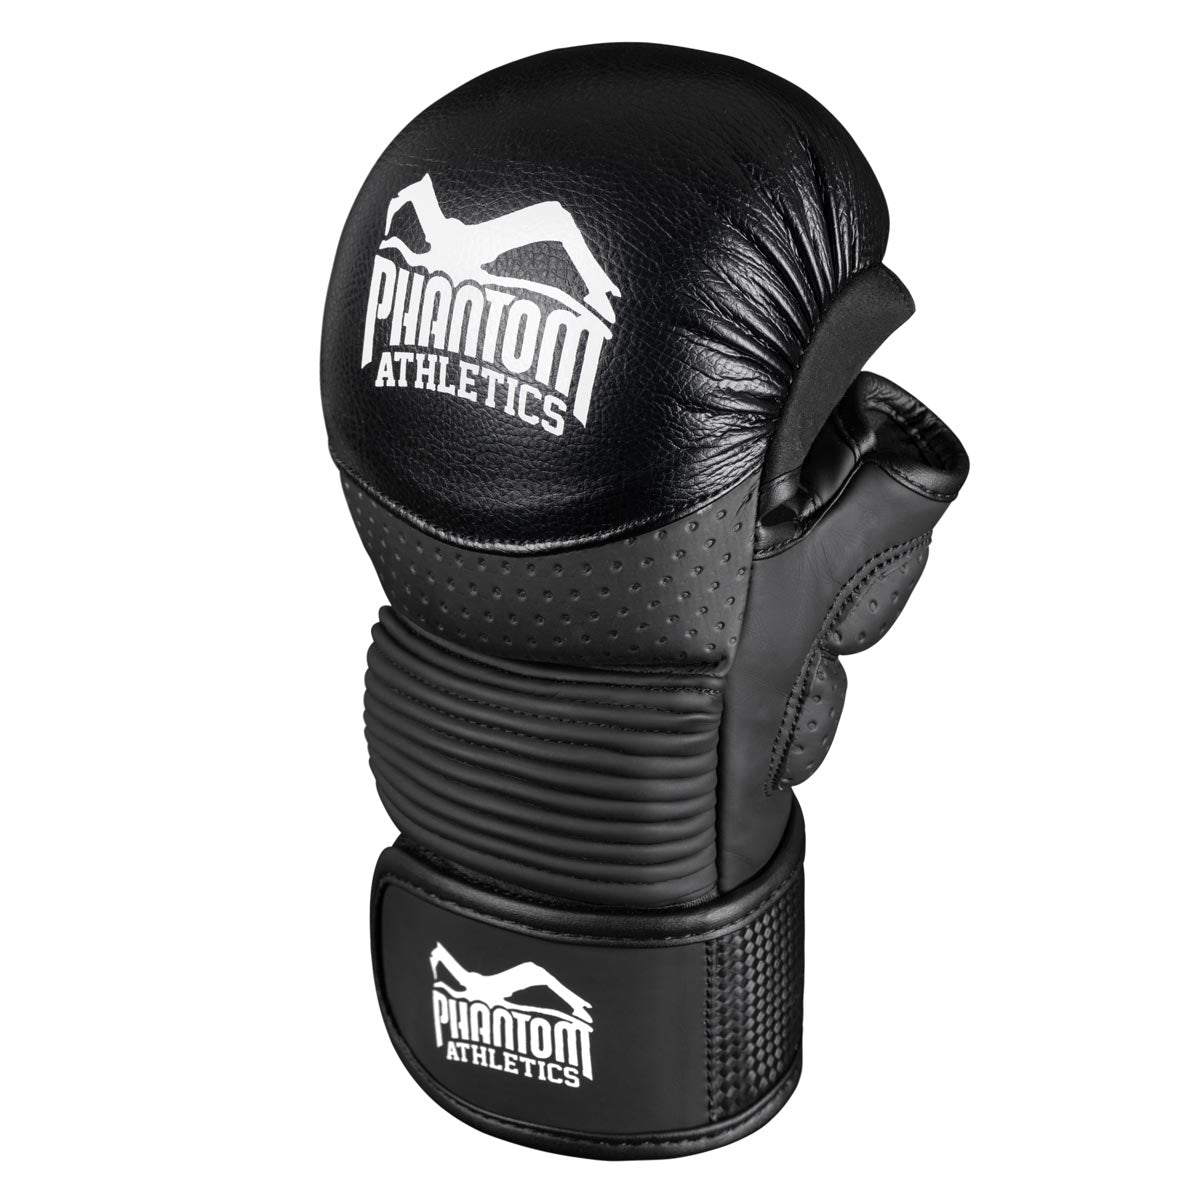 Die Phantom RIOT PRO MMA Sparringshandschuhe. Ideal für dein Kampfsport Training und Amateur Wettkämpfe. Die hochwertigsten und sichersten MMA Handschuhe auf dem Markt.  Perfekte Passform und überragende Qualität für Training und Sparring. Mit extra Support im Handgelenksbereich.